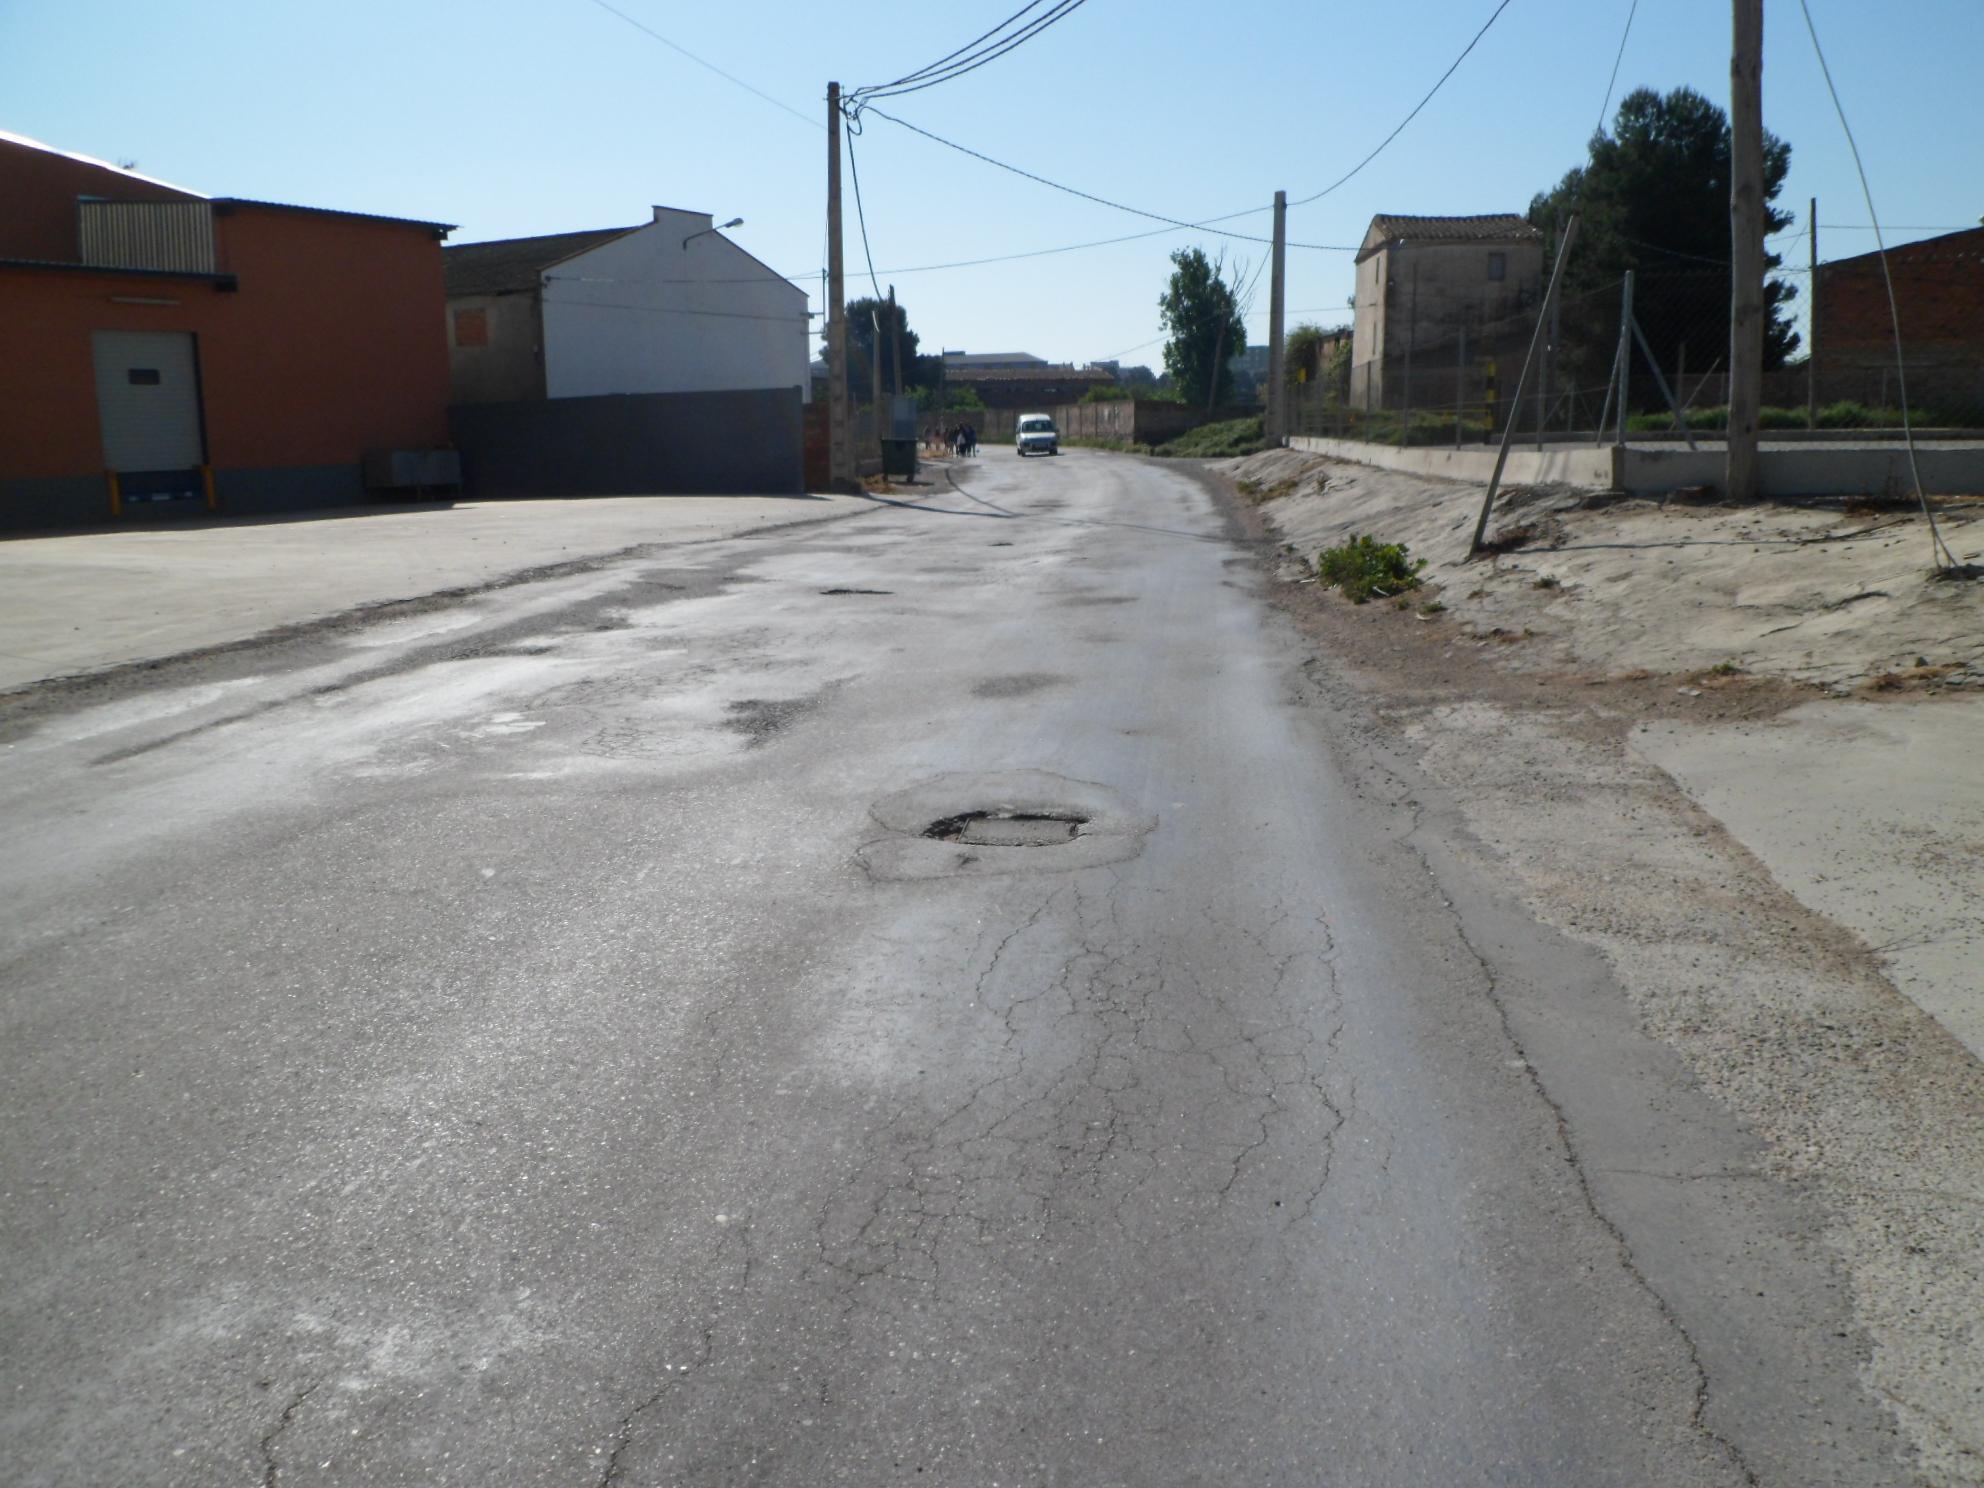 Instamos al Ayuntamiento de Fraga a escuchar a los vecinos de Camino Giraba y realizar mejoras urgentes en la zona